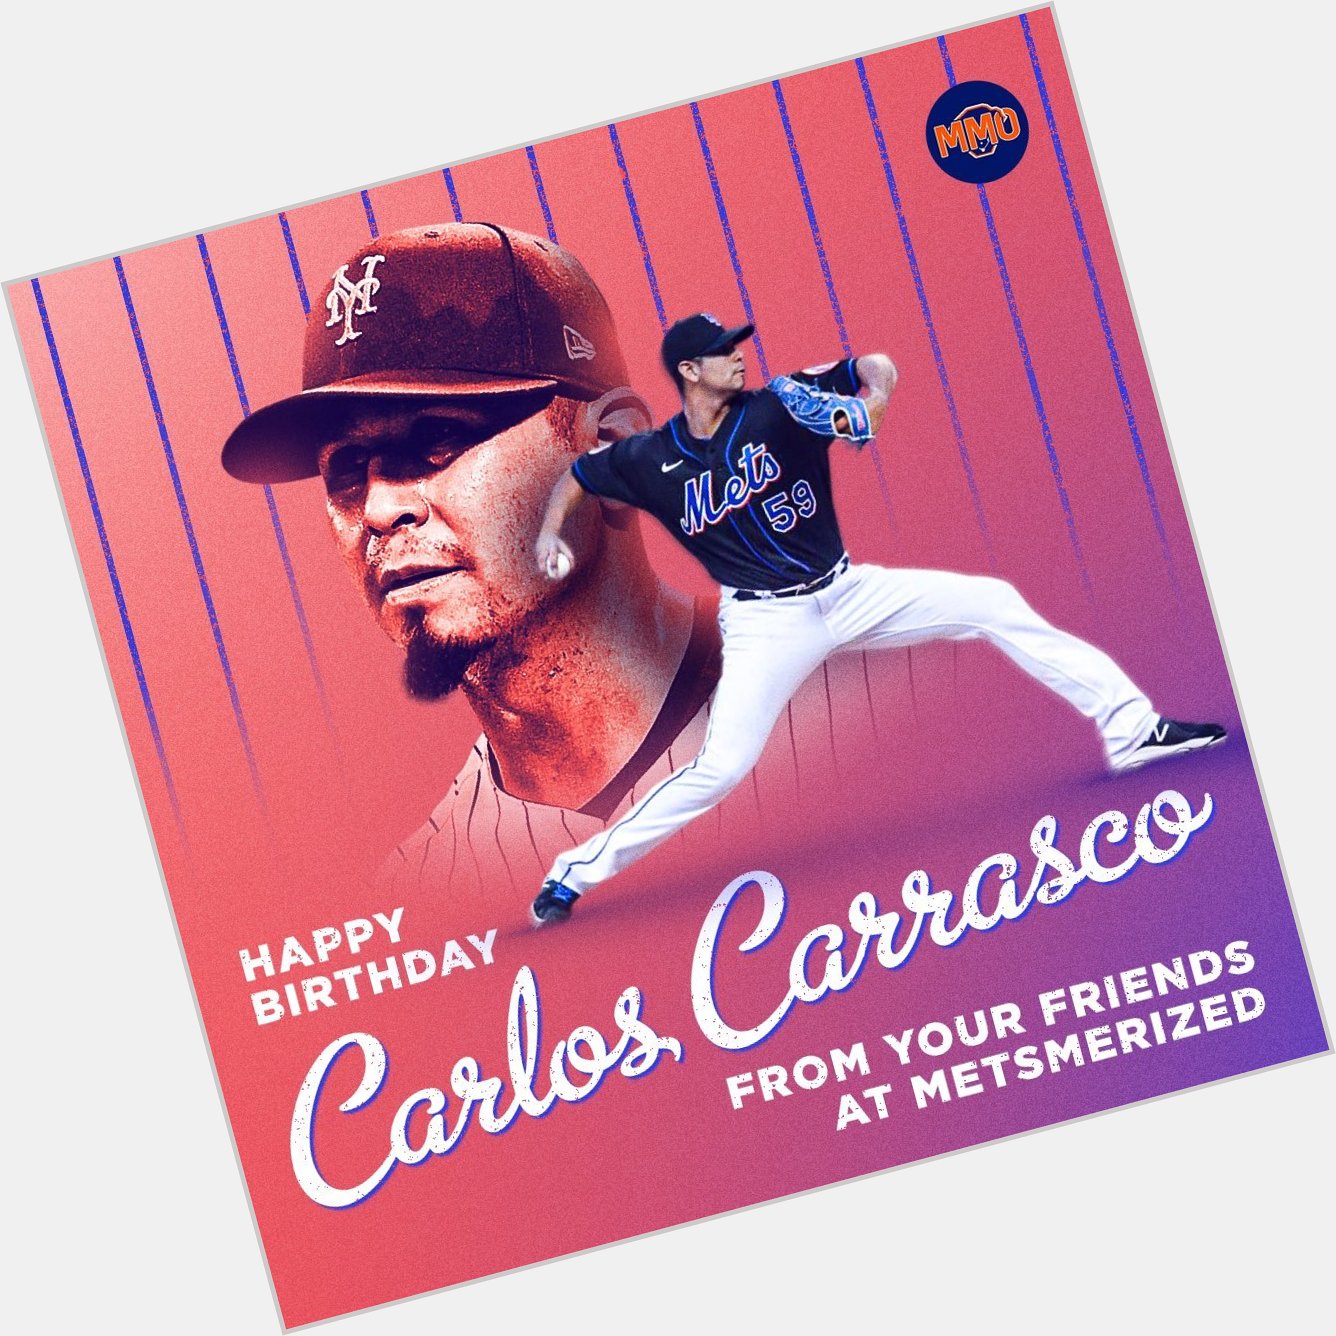 Happy Birthday, Carlos Carrasco!   